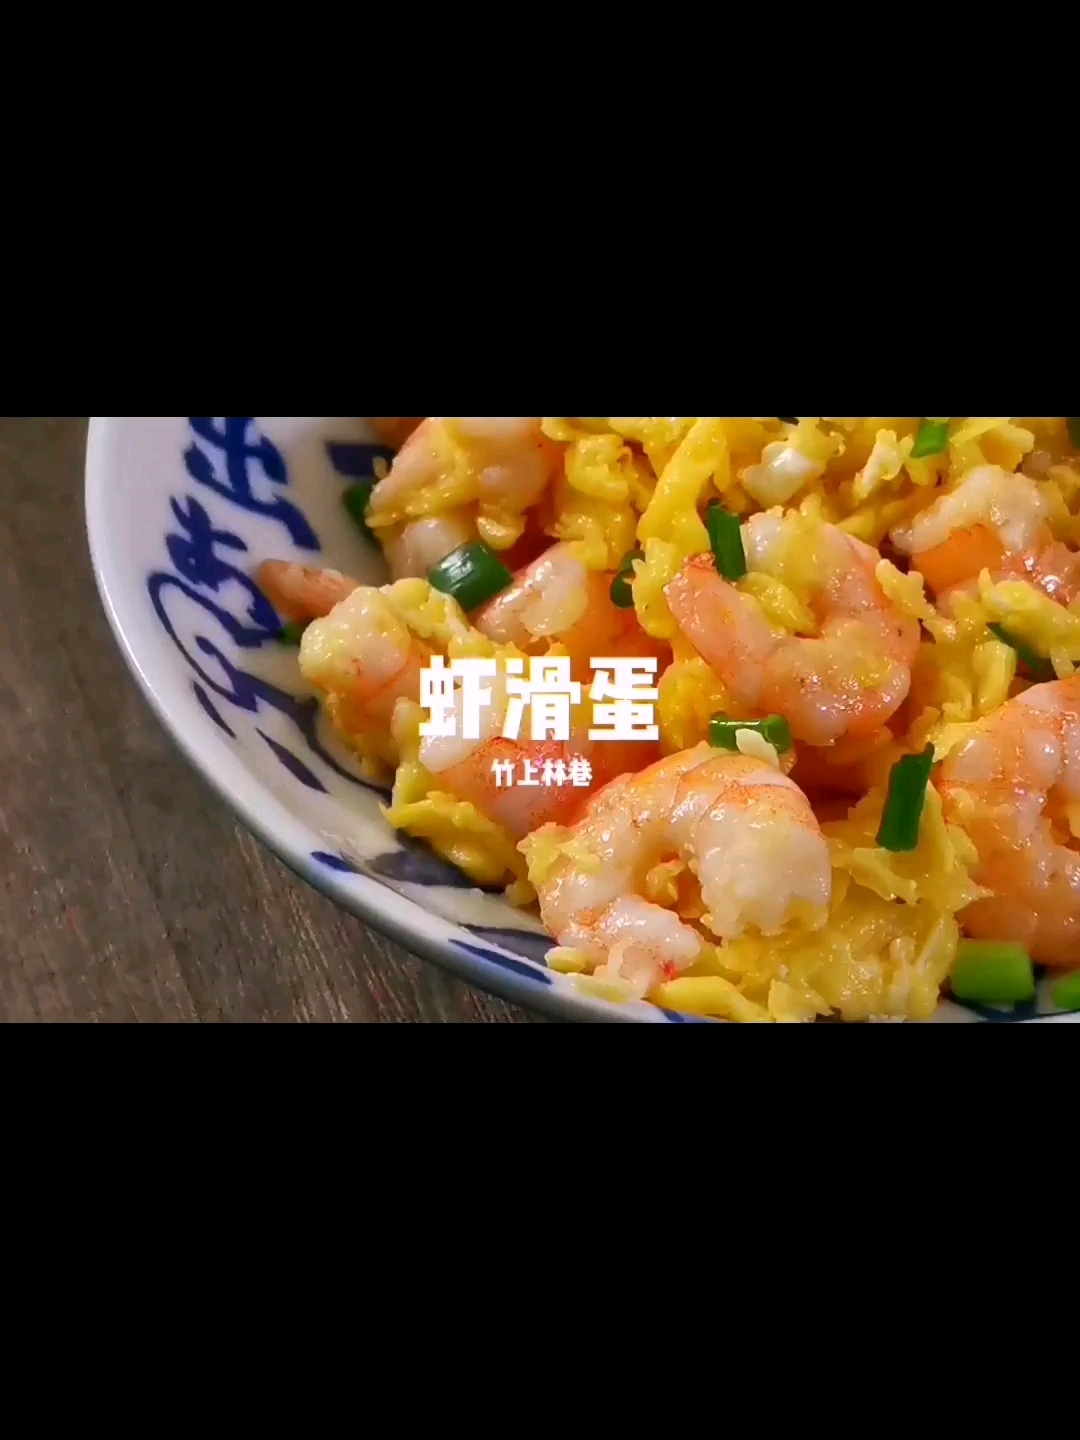 Shrimp and Egg recipe